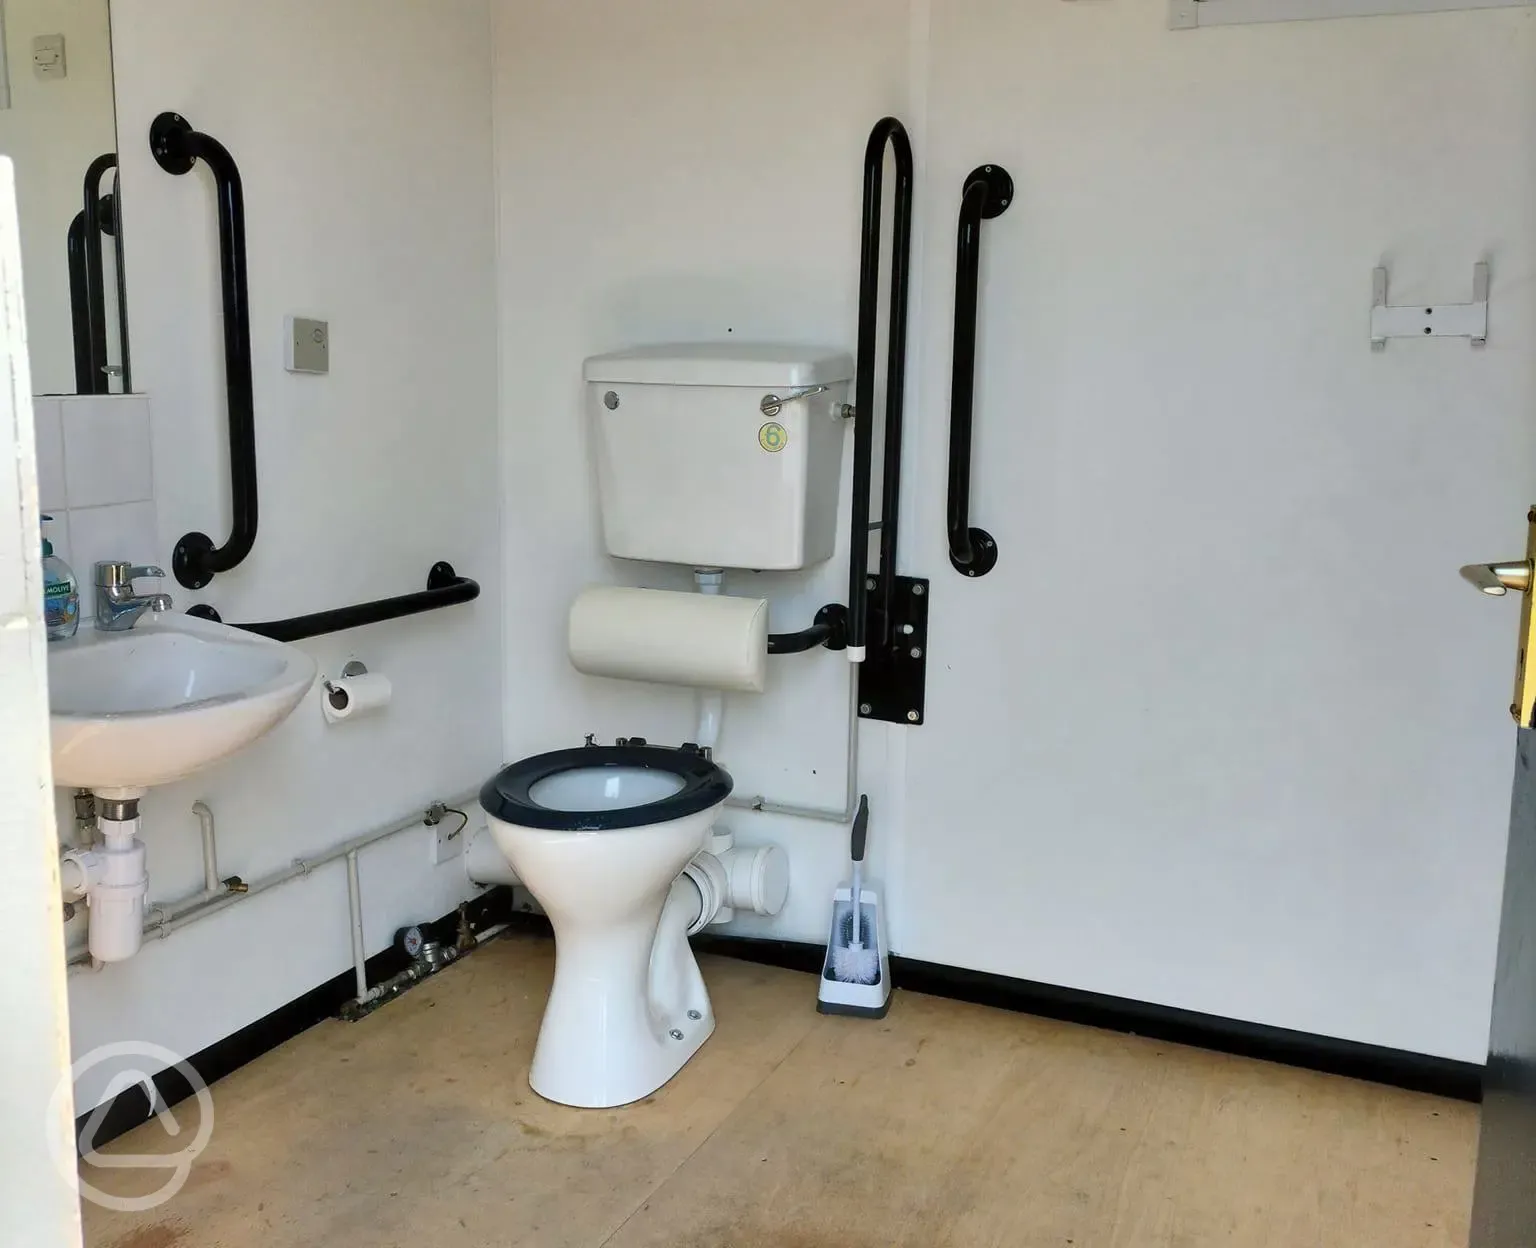 Toilet facility